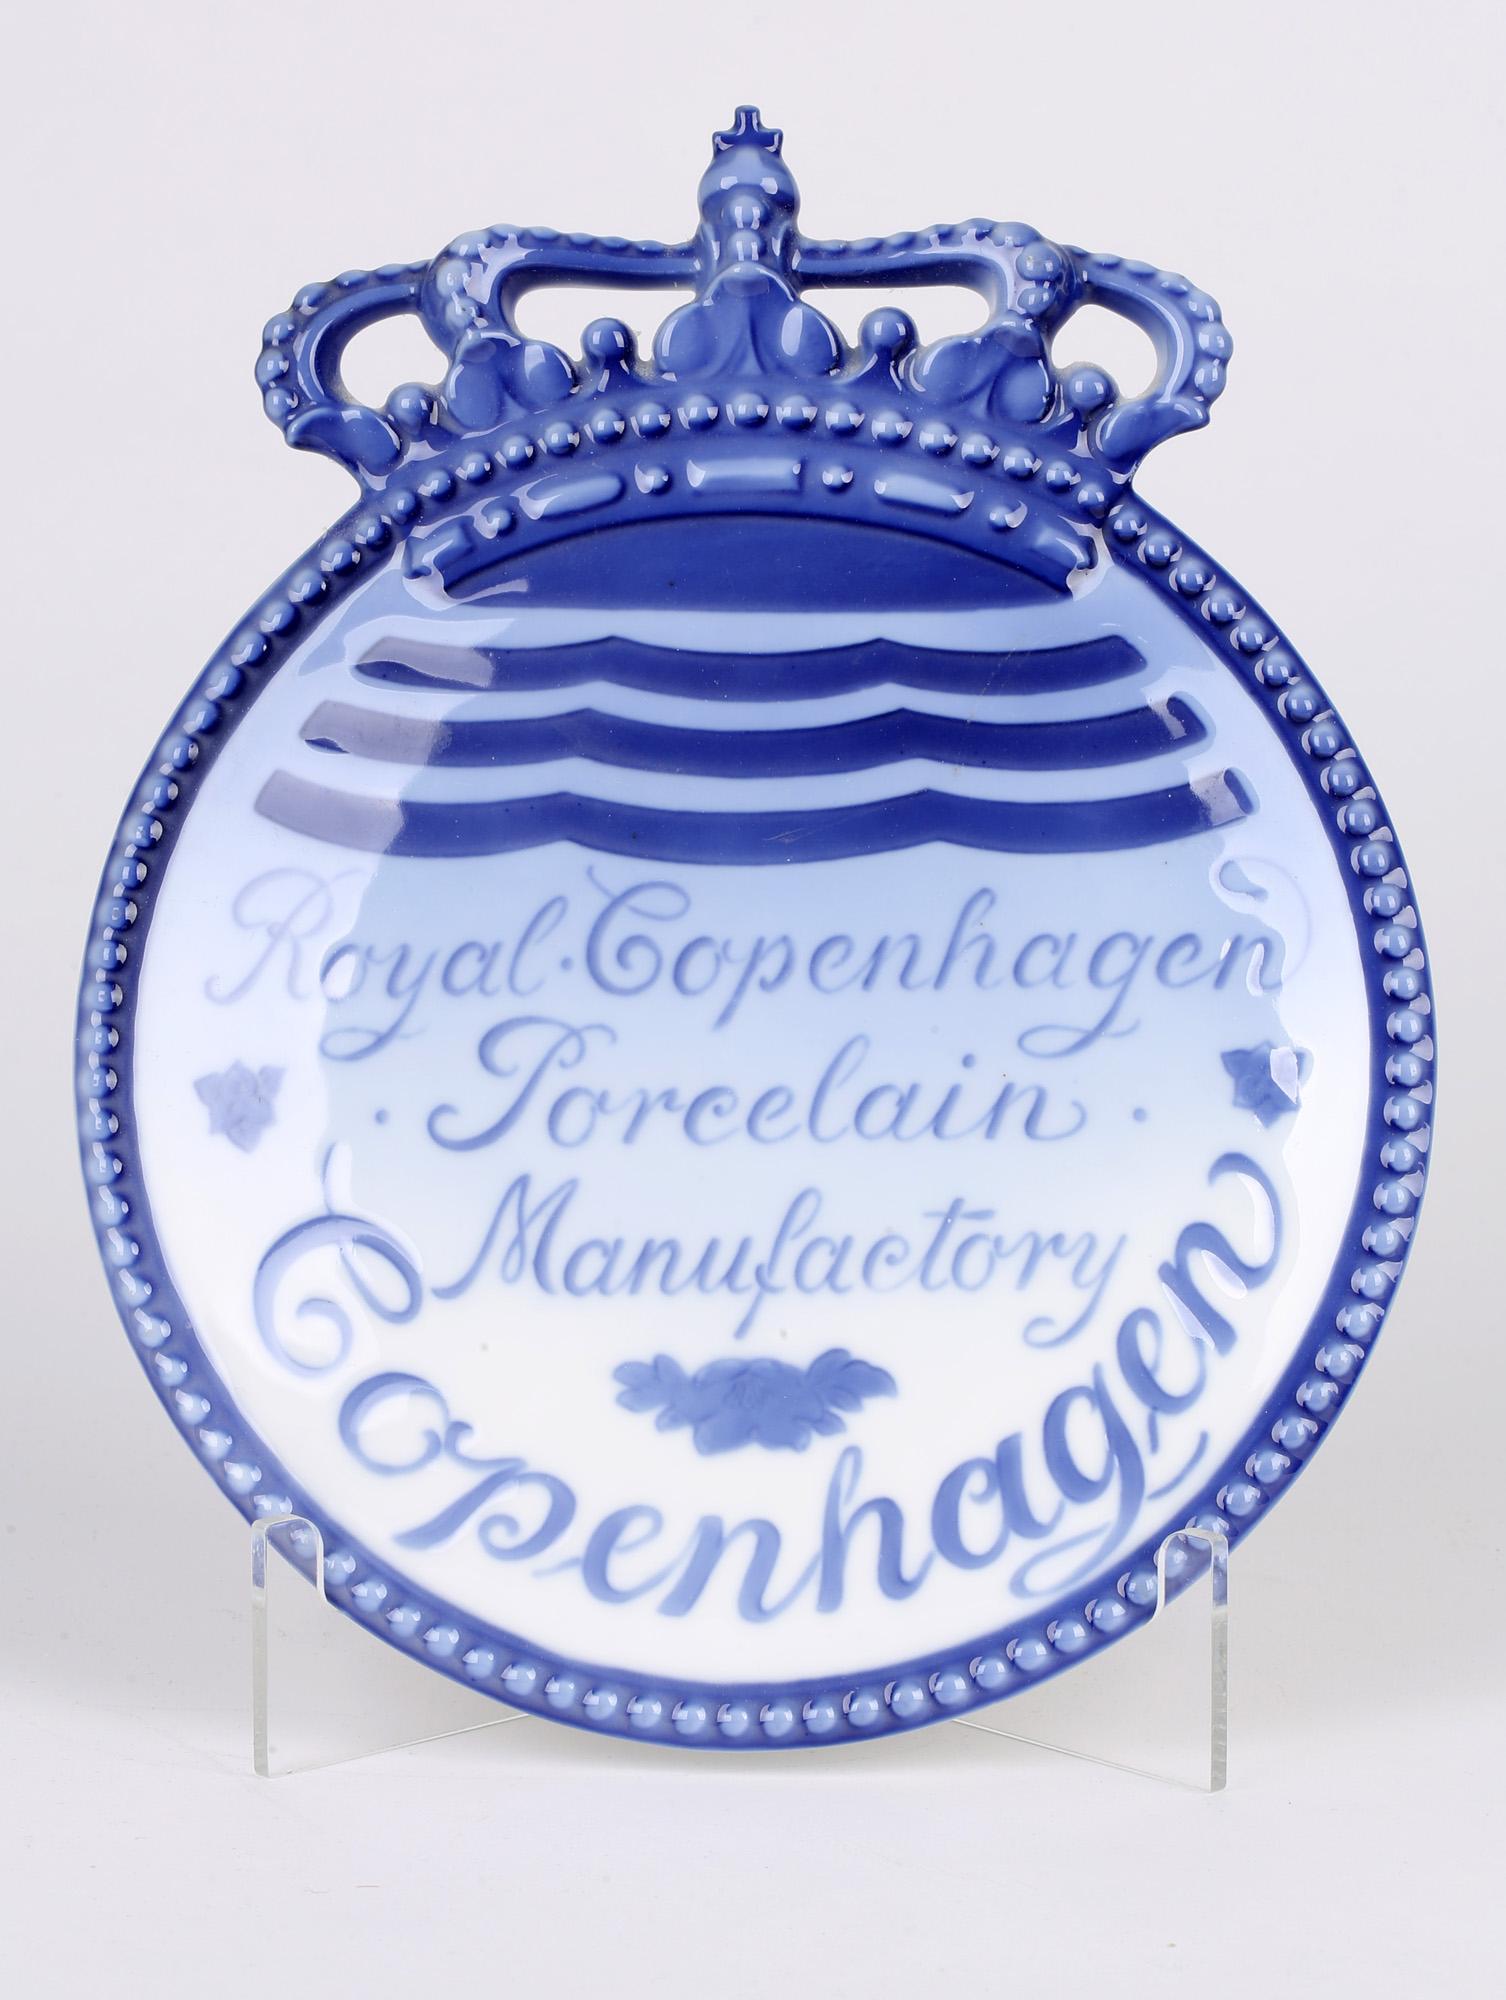 Royal Copenhagen Porcelain Manufactory Advertising Plaque 4